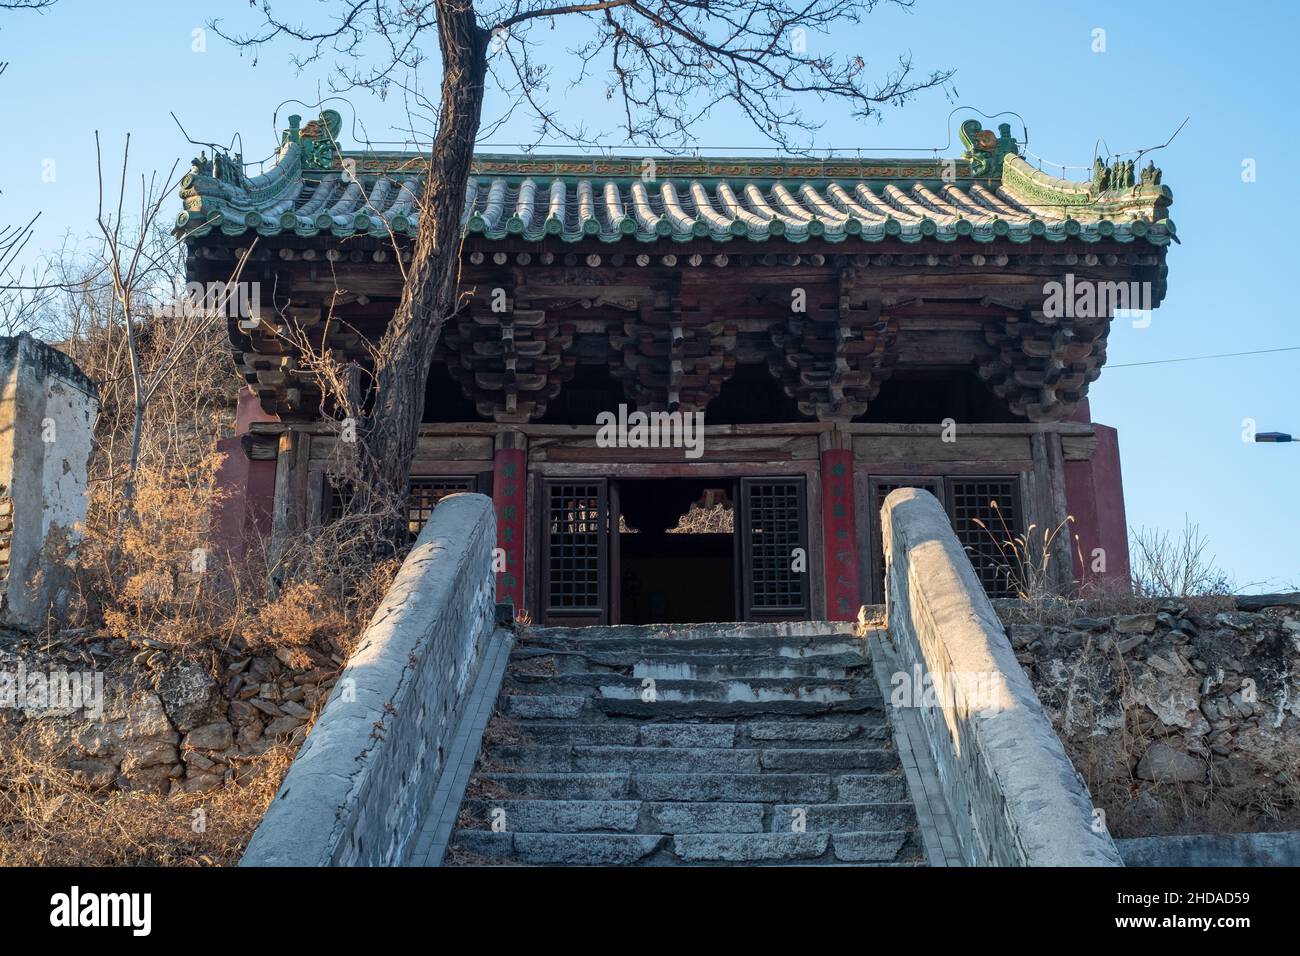 Dragon King Tempel befindet sich im Dorf Malan, Zhaitang Stadt, Mentougou Bezirk, Peking. Es wurde während Liao（907-1125) oder Jin (1115-1234) gebaut. Stockfoto